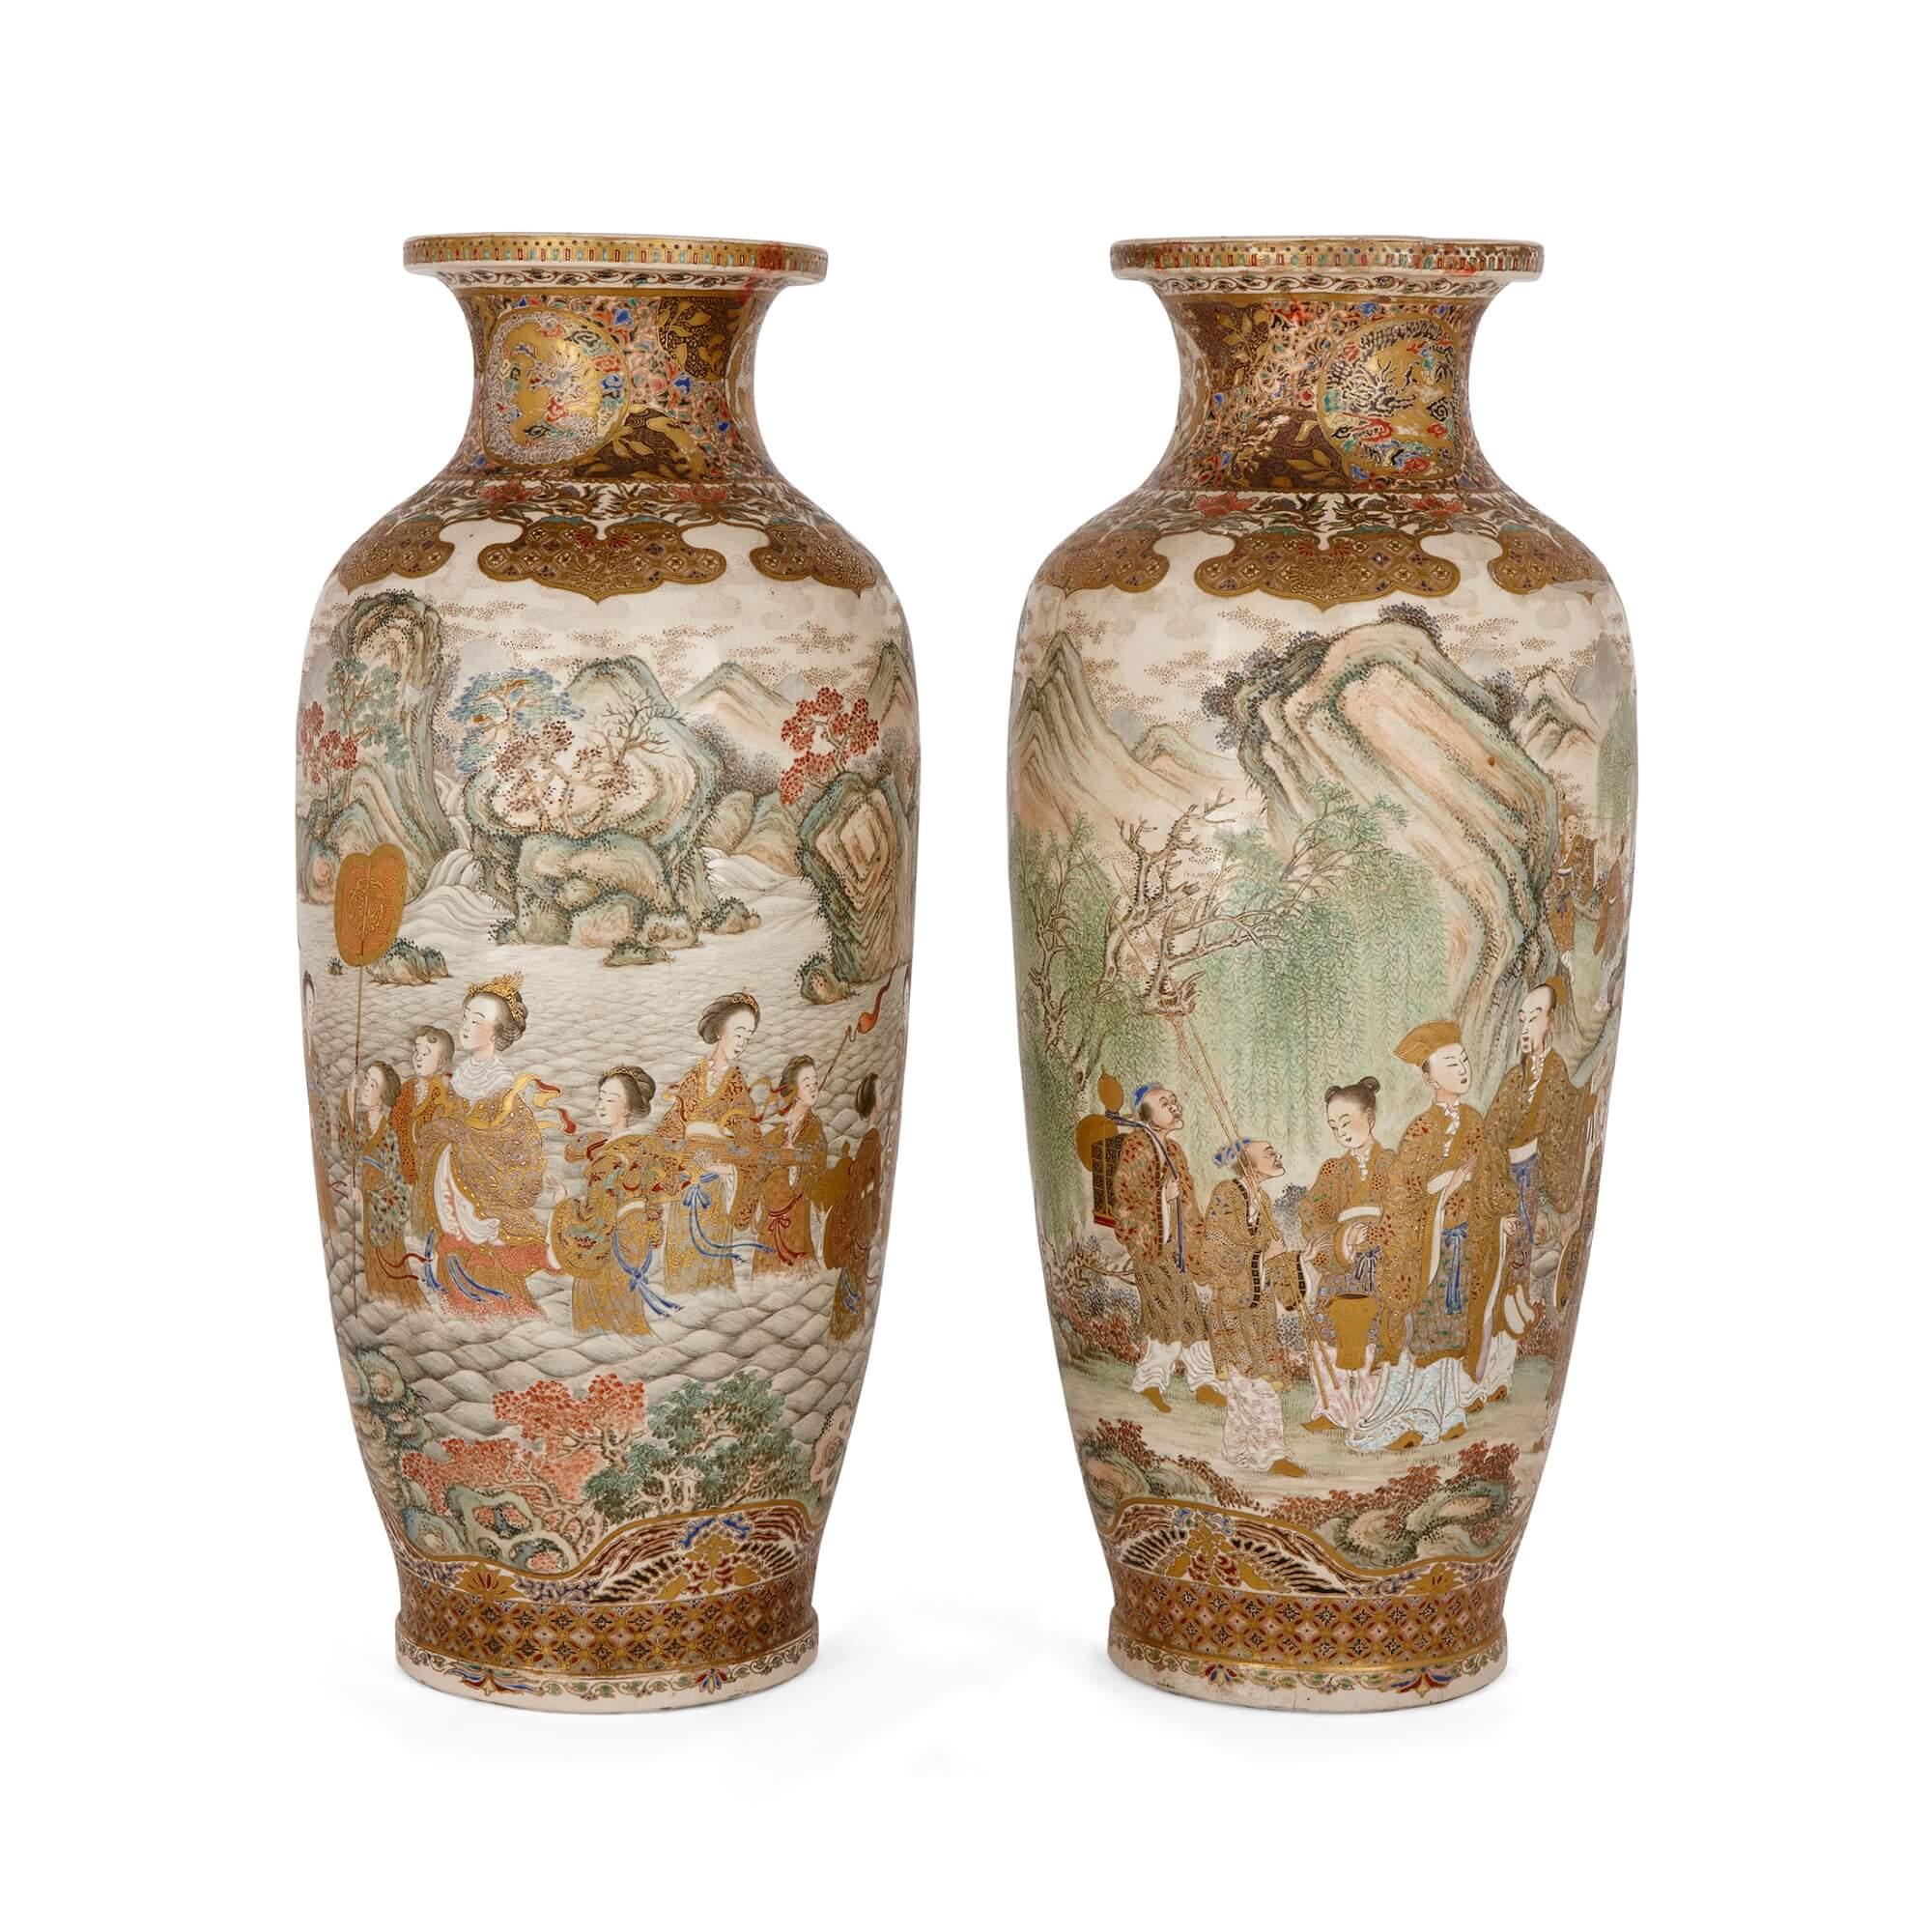 Ein Paar große Satsuma-Rouleau-Vasen aus der Meiji-Zeit
Japanisch, Ende 19. Jahrhundert
Höhe 54,5 cm, Durchmesser 24 cm

Diese schönen Satsuma-Vasen wurden während der Meiji-Zeit in diesem unverwechselbaren und wunderschönen Stil und in der